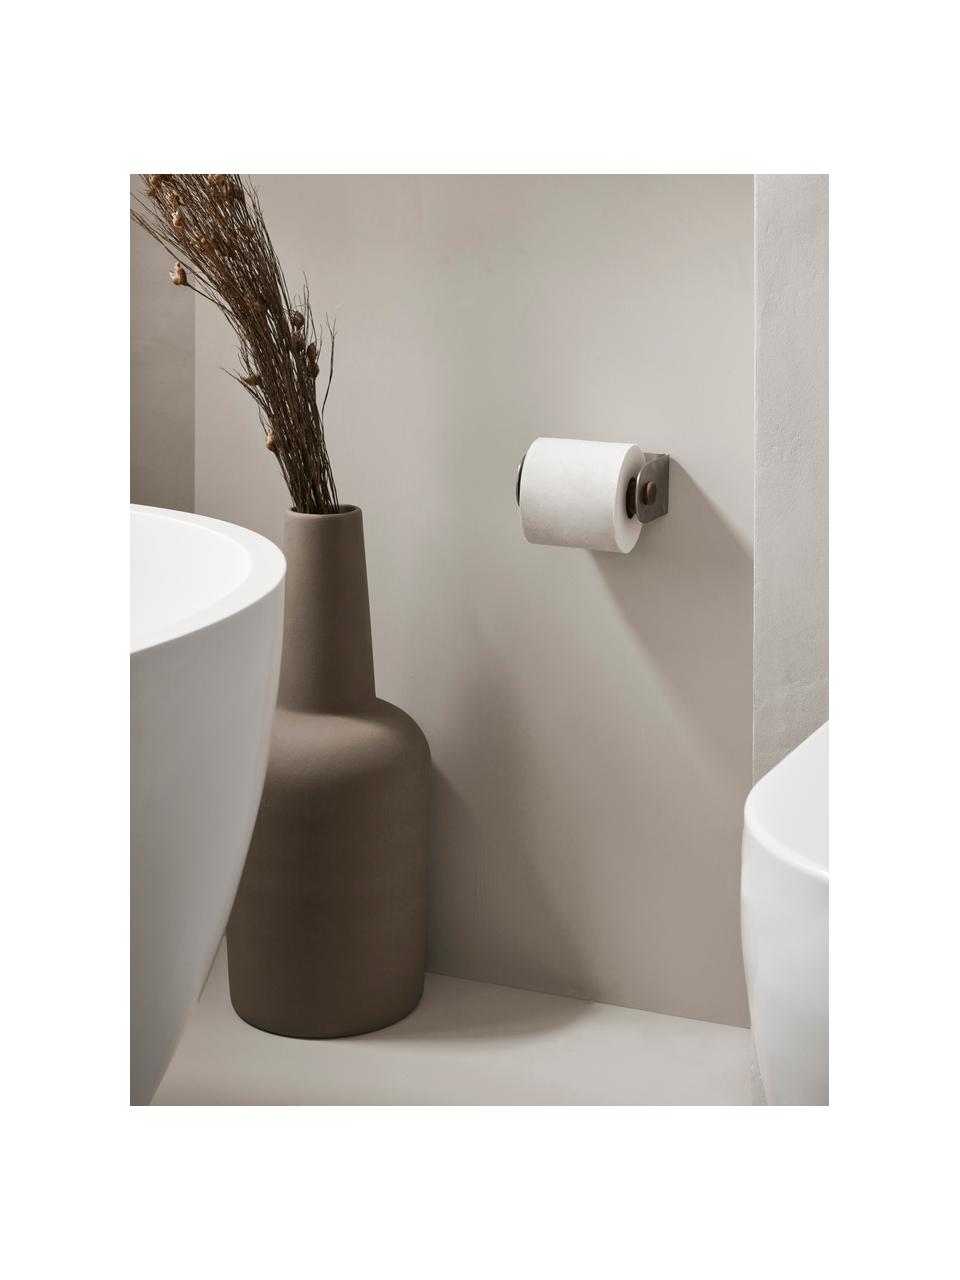 Nástěnný držák na toaletní papír z ořechového dřeva Dowel, Nerezová ocel, ořechové dřevo, Ořechové dřevo, stříbrná, Š 12 cm, V 6 cm